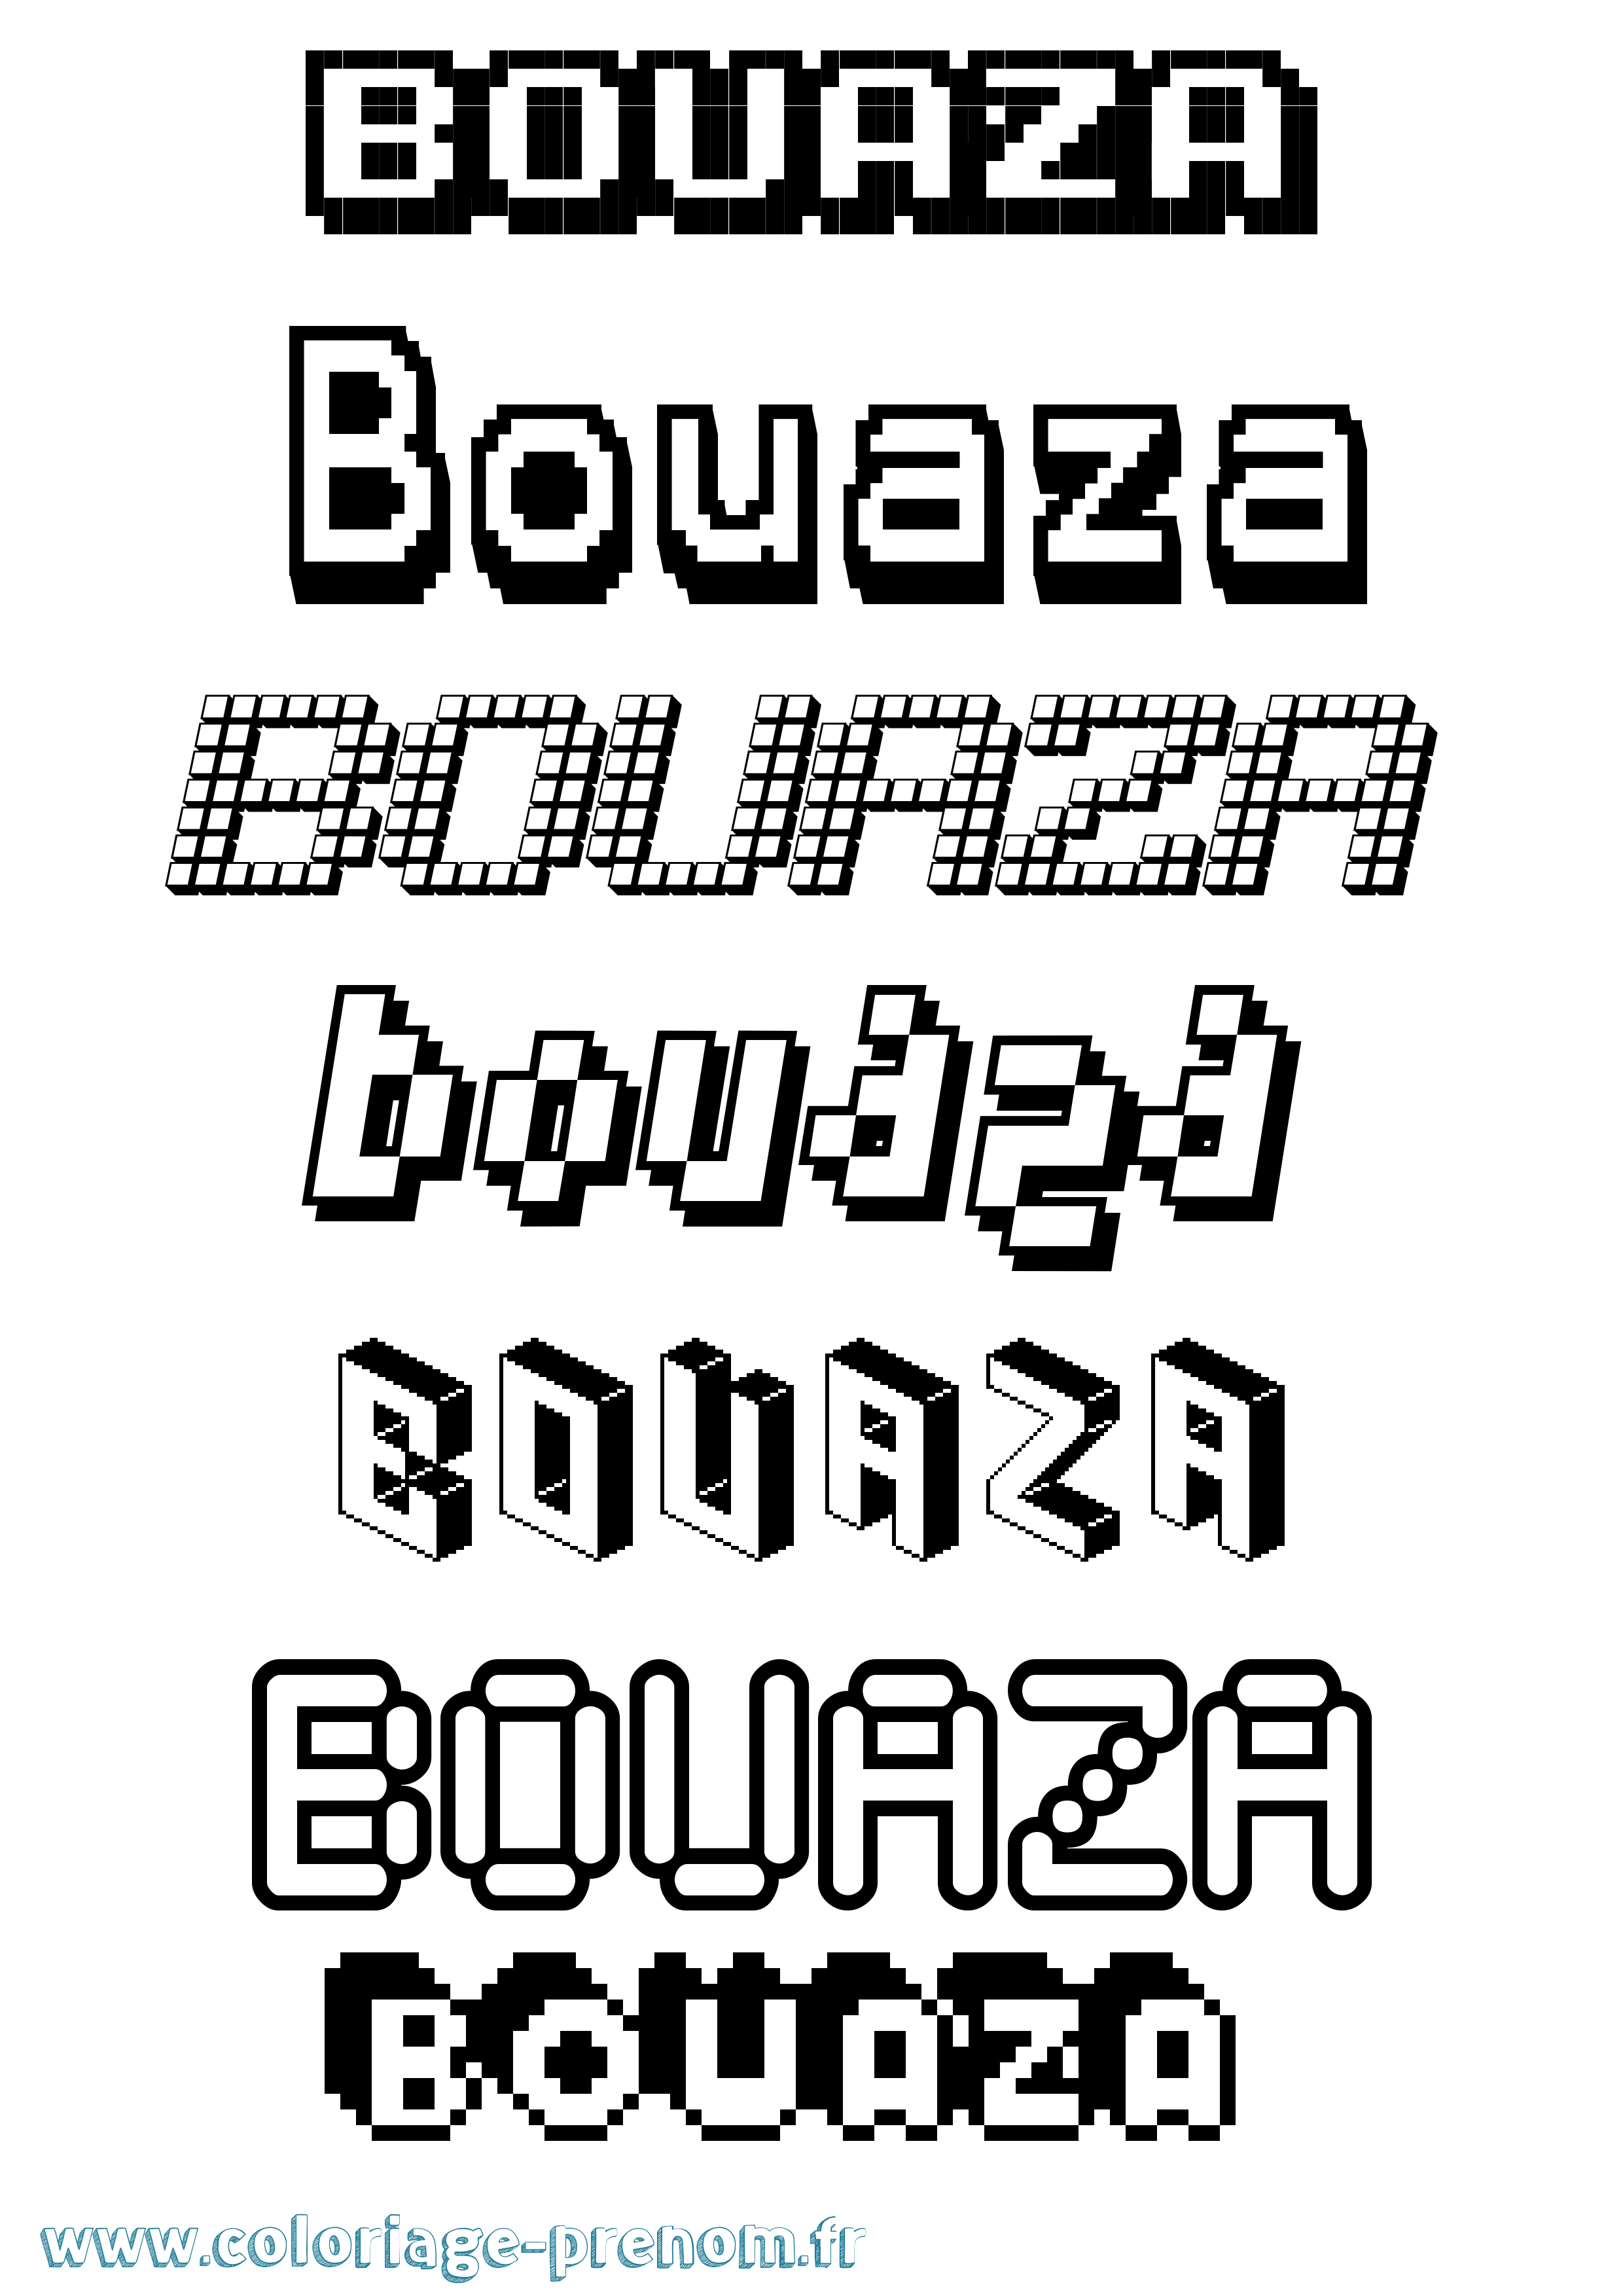 Coloriage prénom Bouaza Pixel